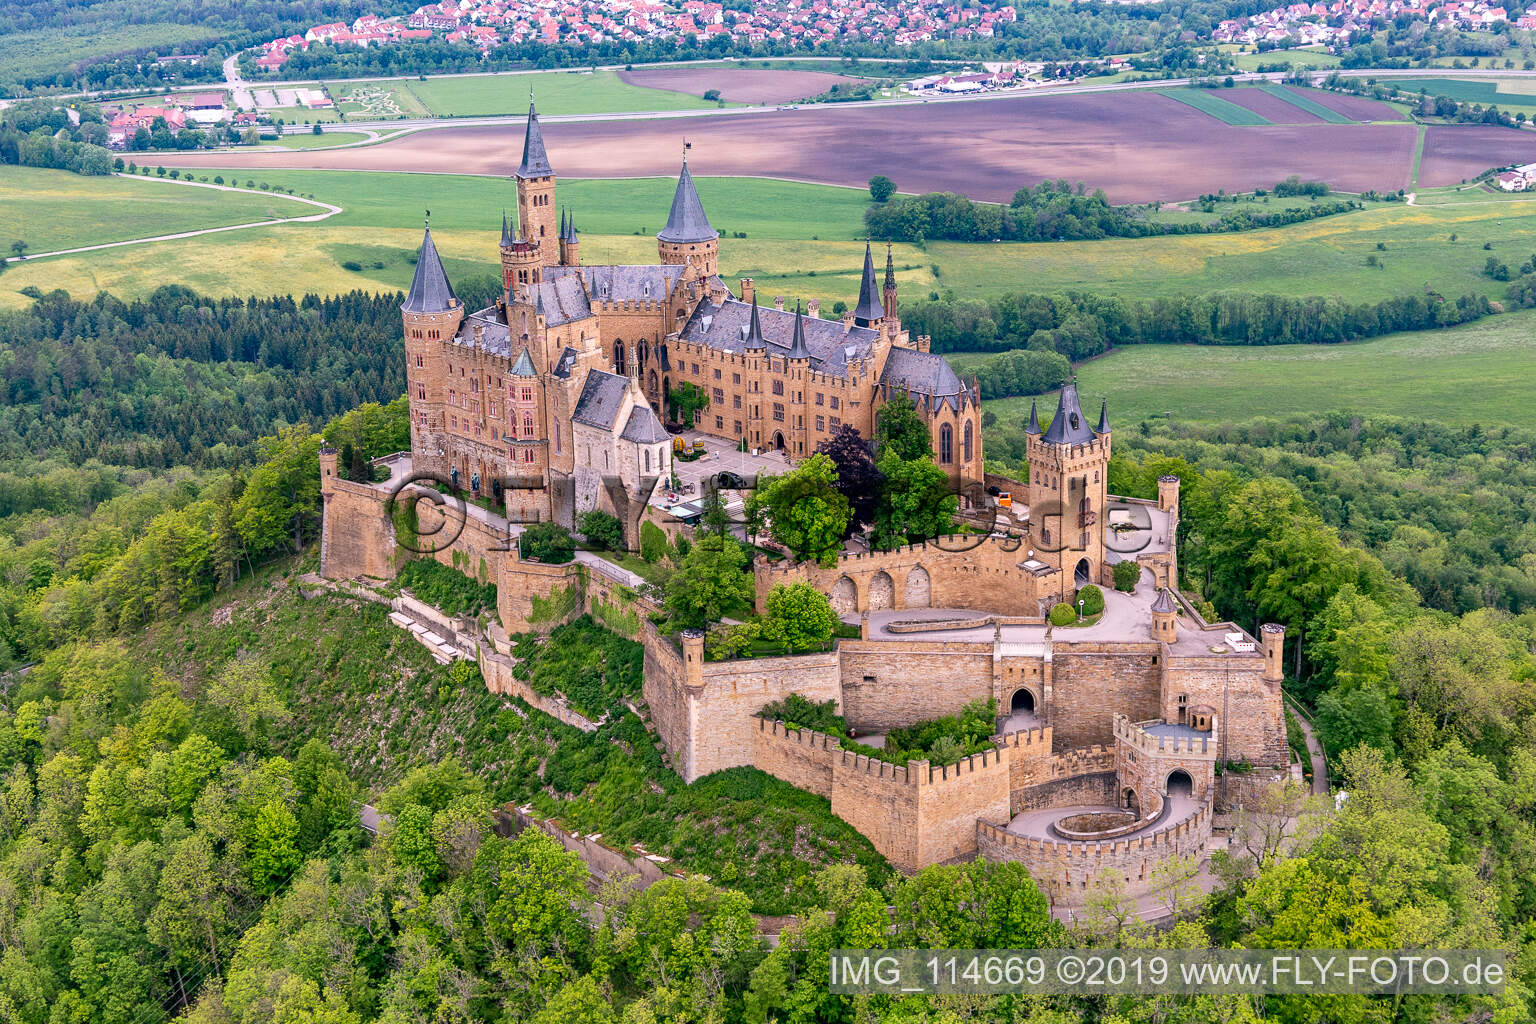 Photographie aérienne de Château de Hohenzollern à Bisingen dans le département Bade-Wurtemberg, Allemagne